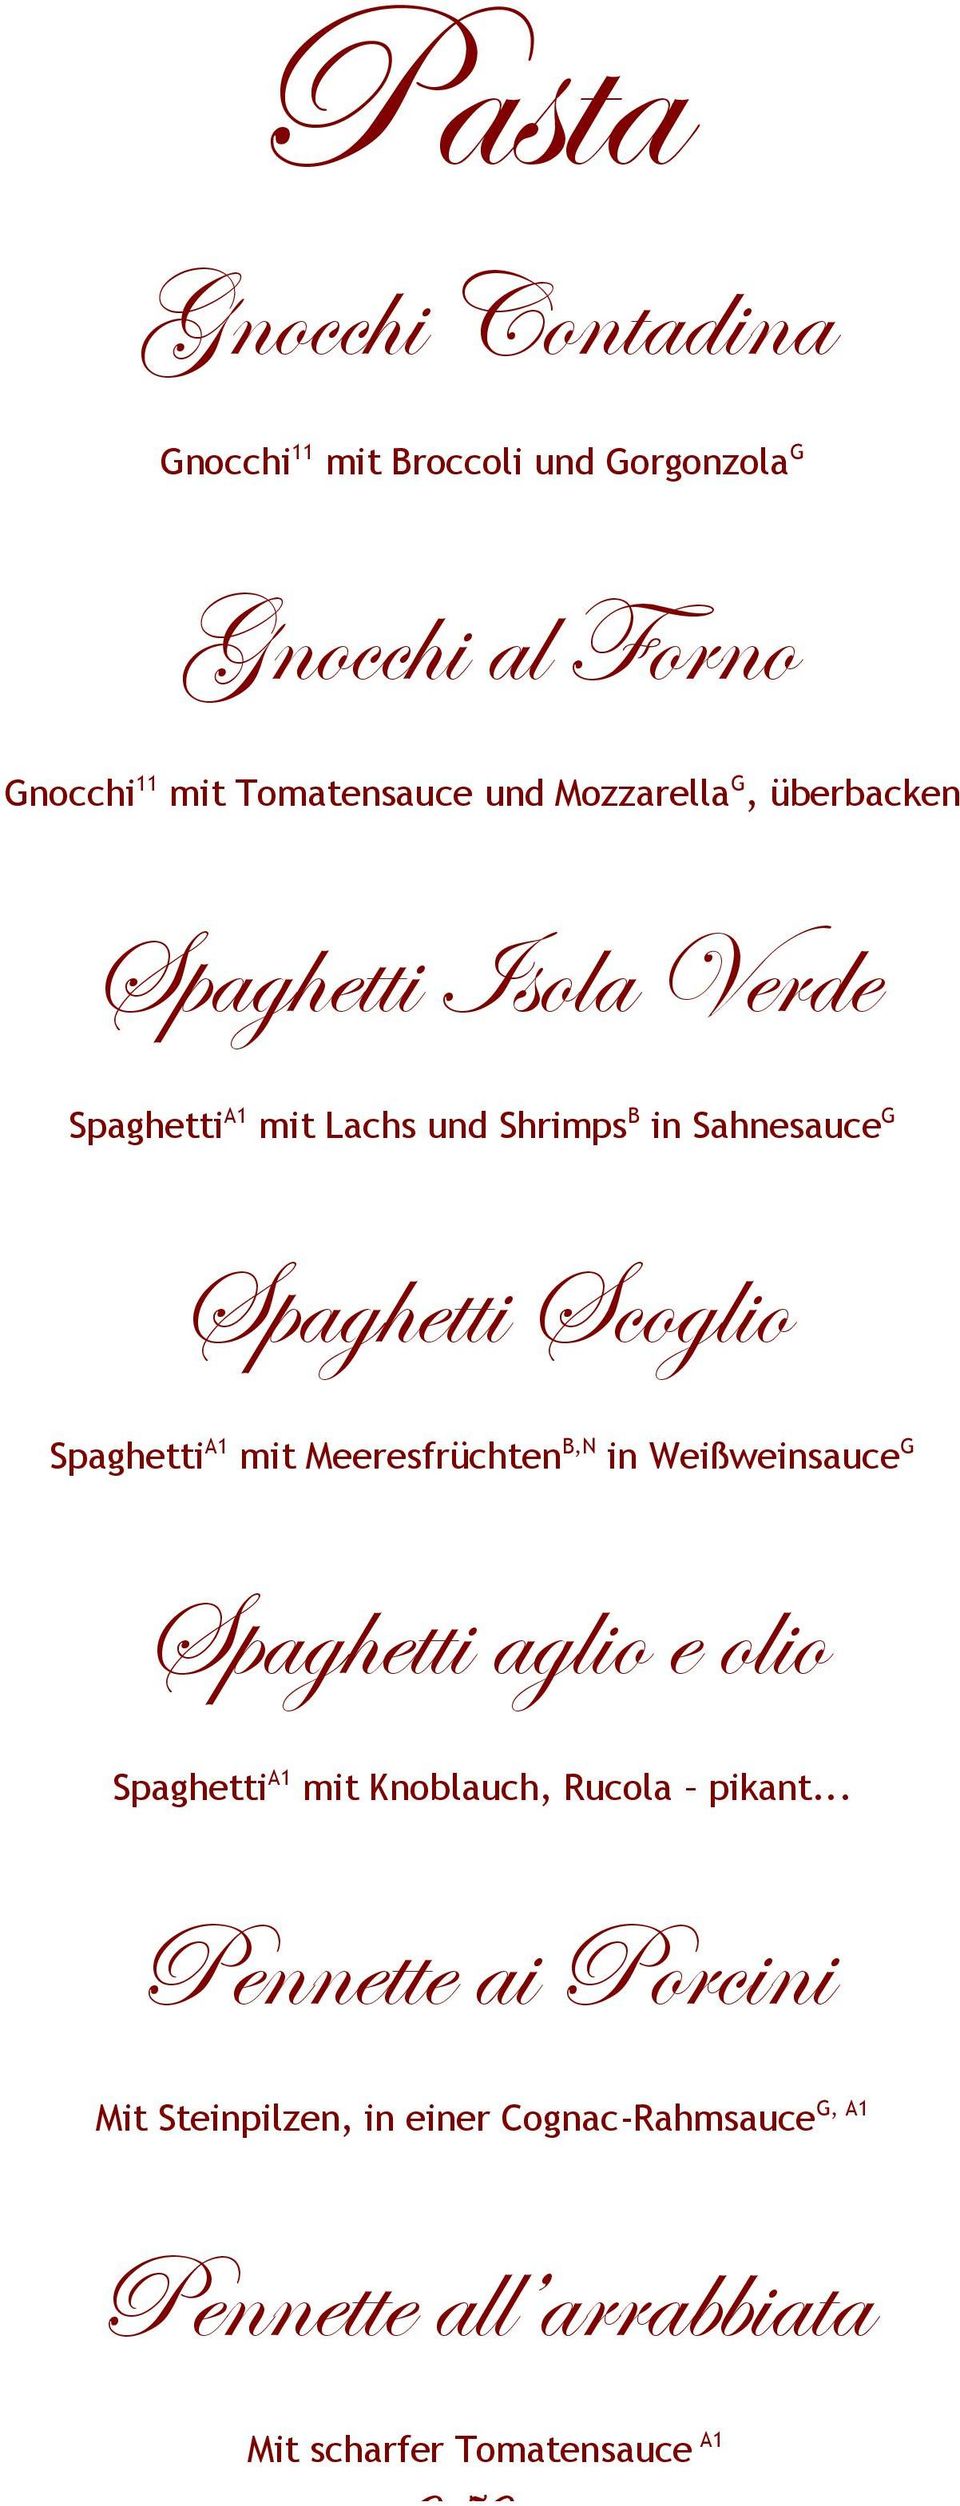 Spaghetti A1 mit Meeresfrüchten B,N in Weißweinsauce G Spaghetti aglio e olio Spaghetti A1 mit Knoblauch, Rucola pikant.